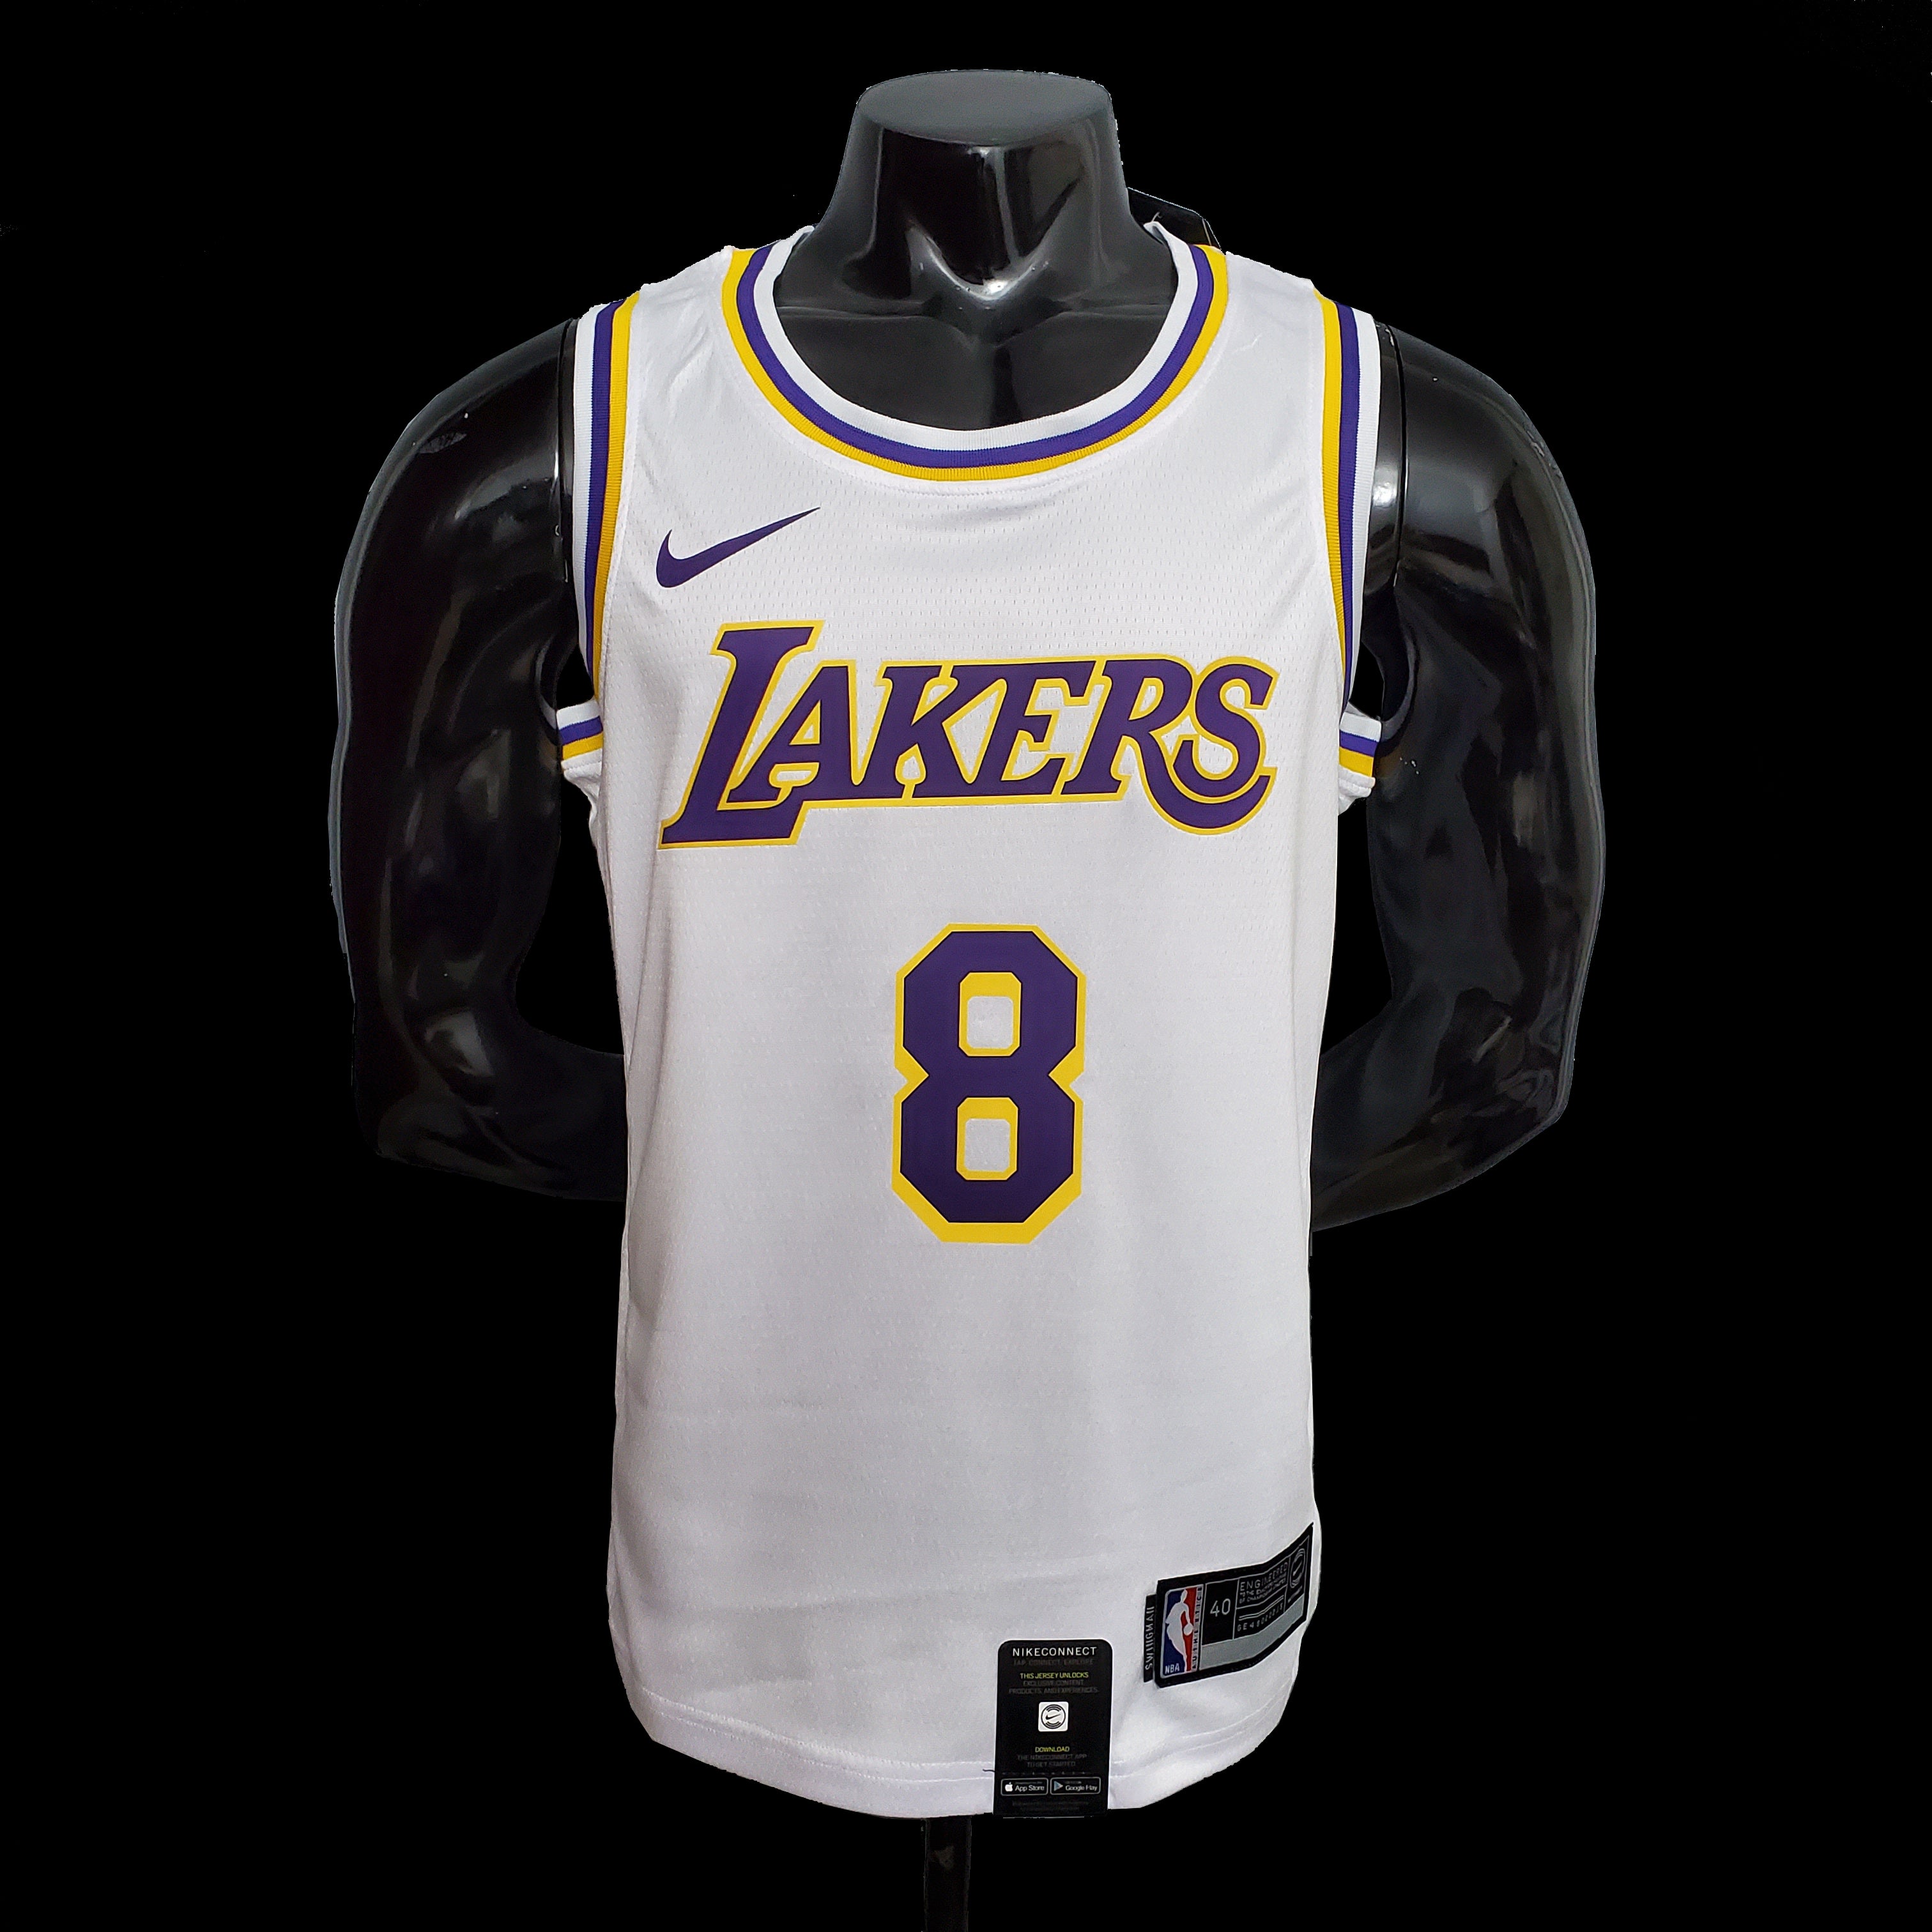 Lakers Kobe Bryant 8 Jersey NBA